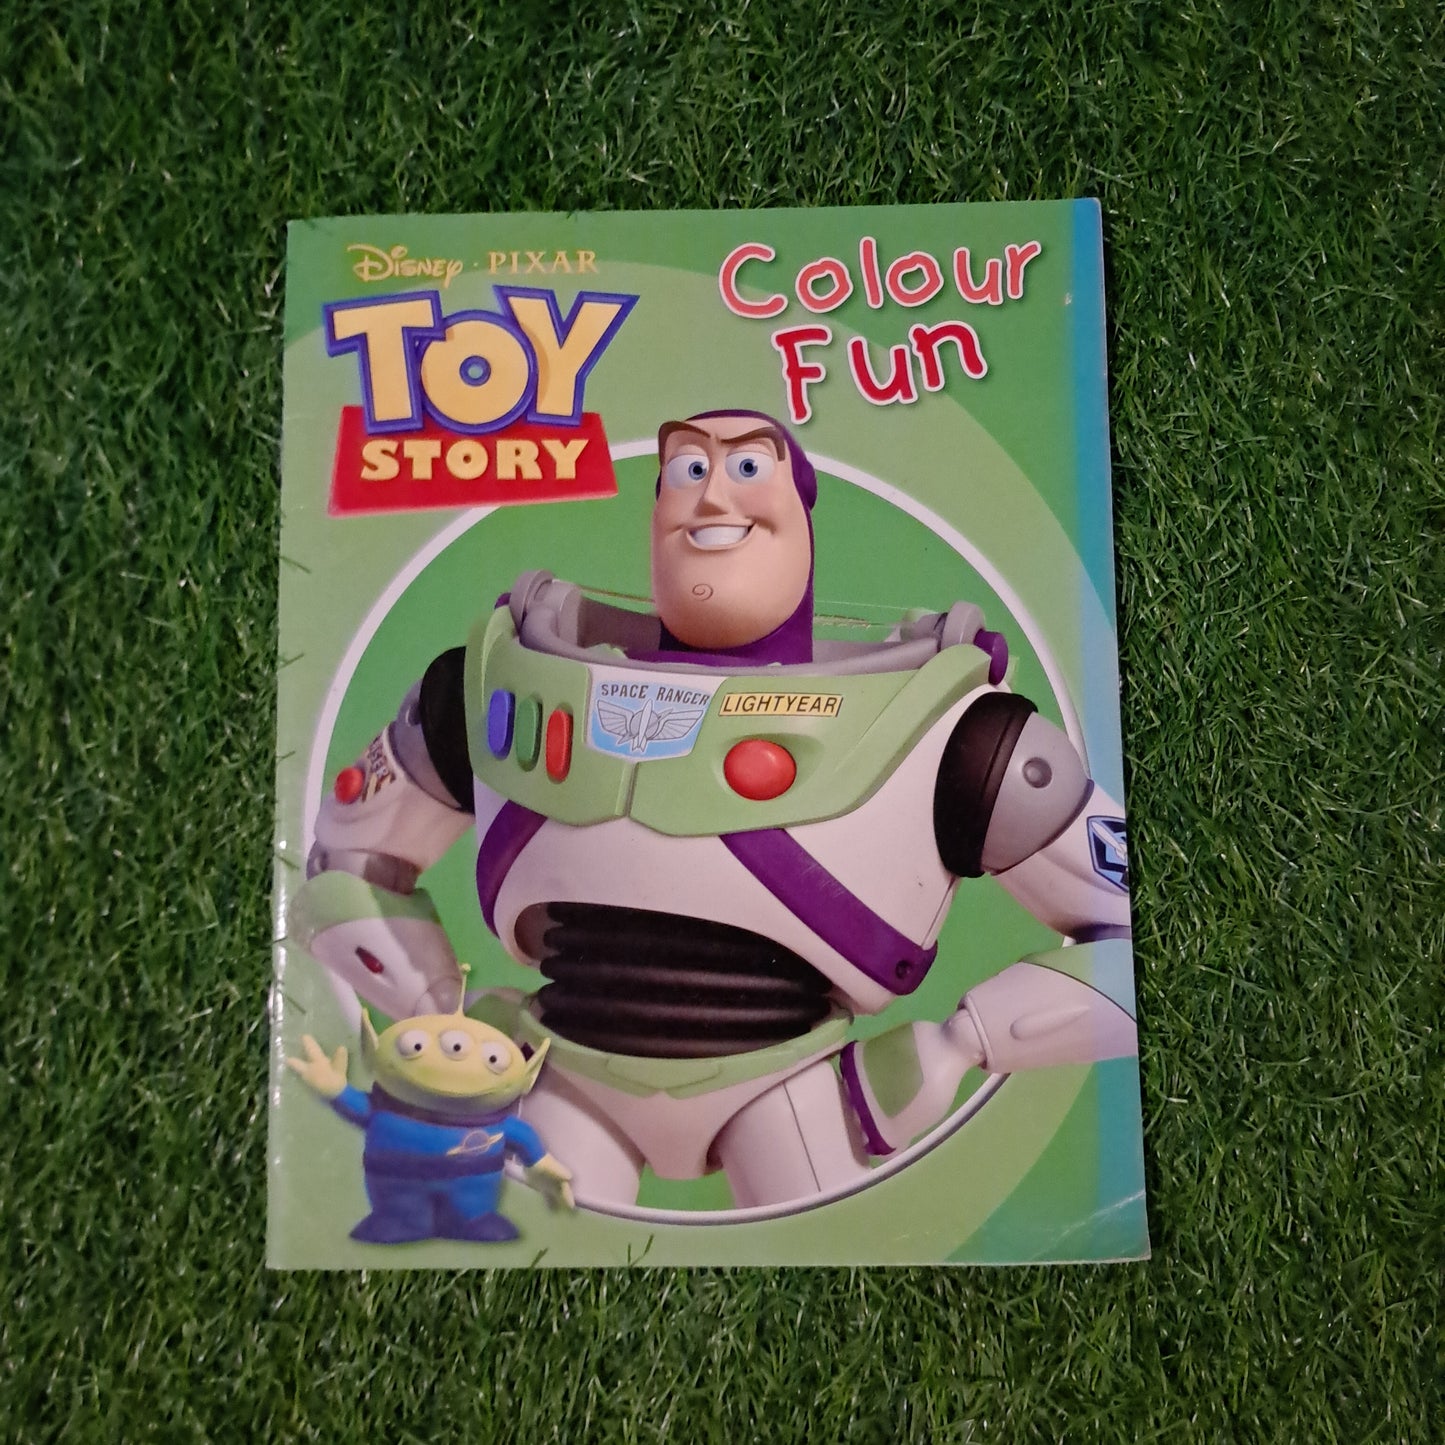 Disney Pixar Toy Story Colour Fun